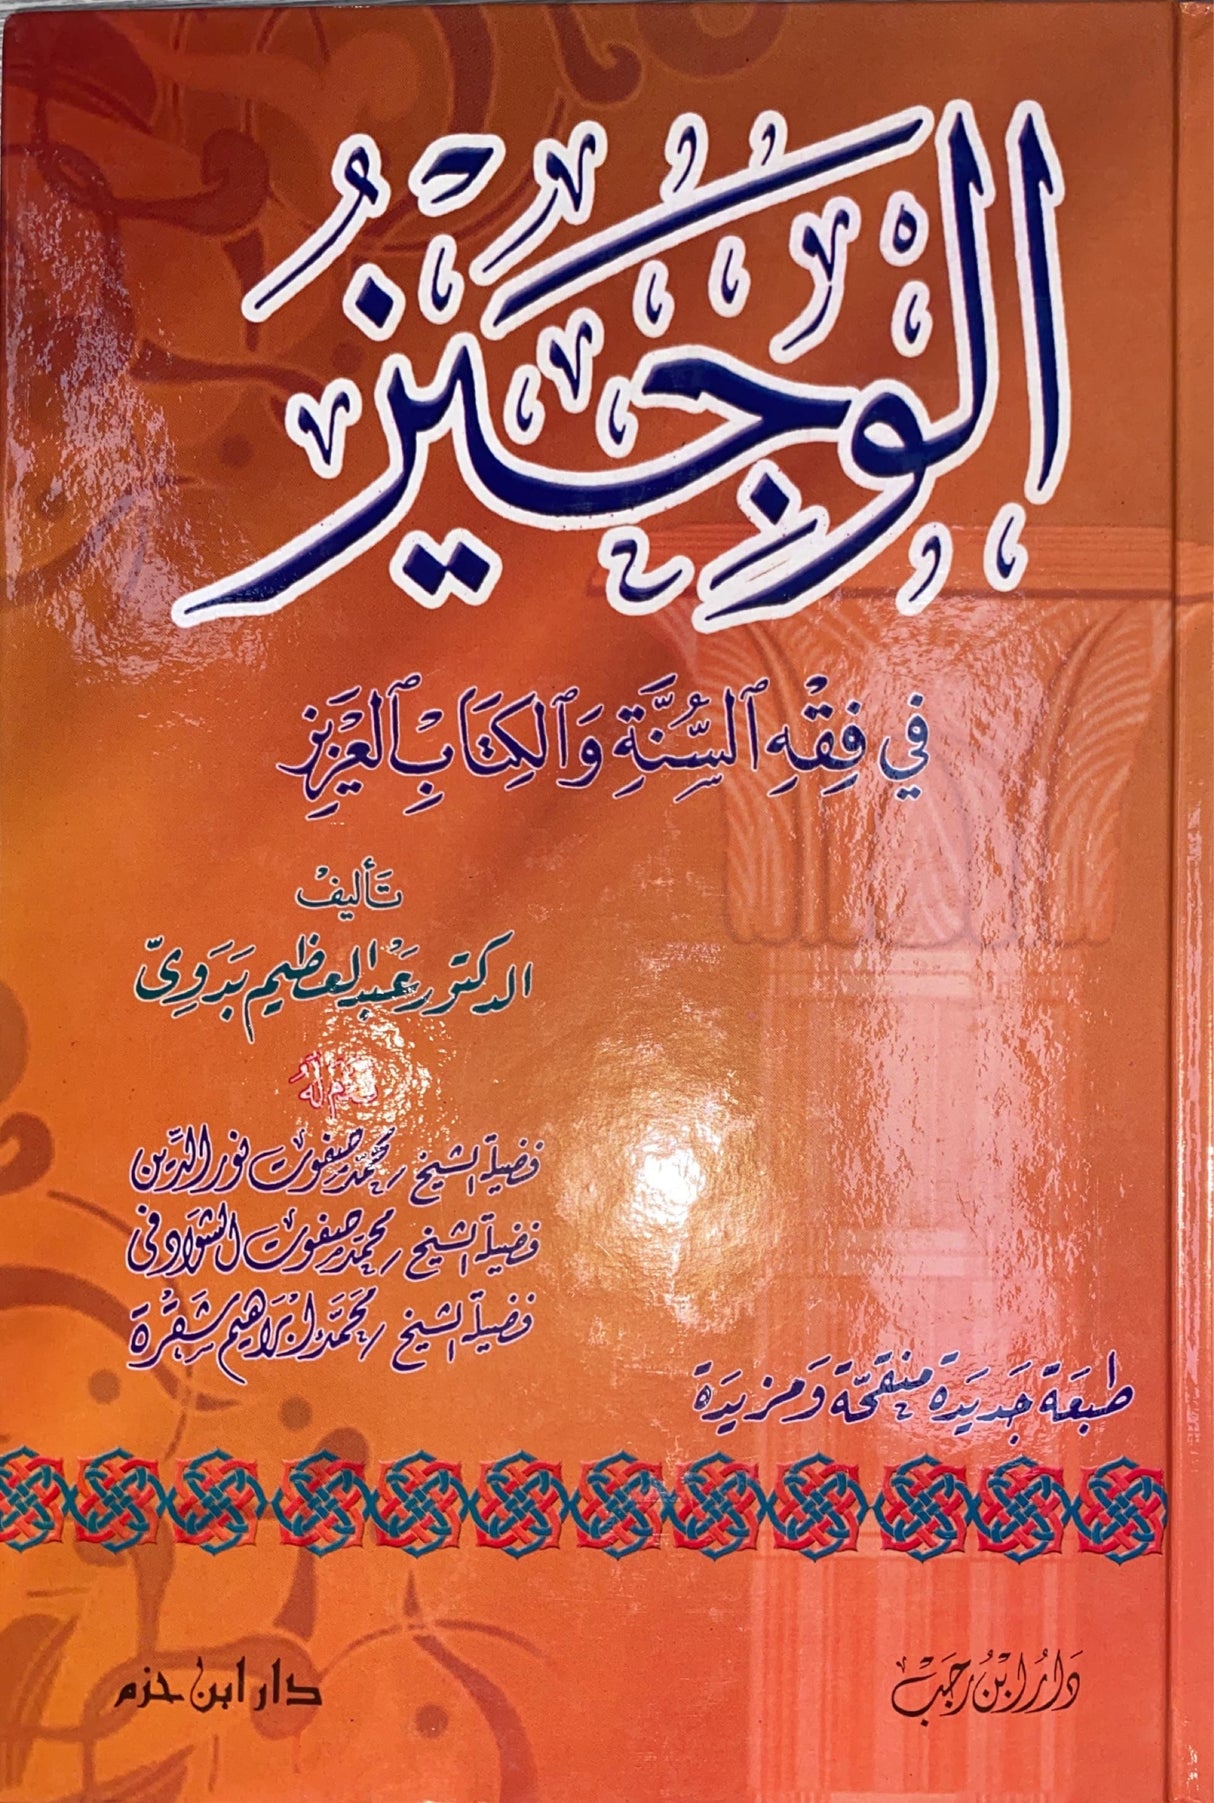 الوجيز في فقه السنة و الكتاب العزيز Al Wajid Fi Fiqhil Sunnah